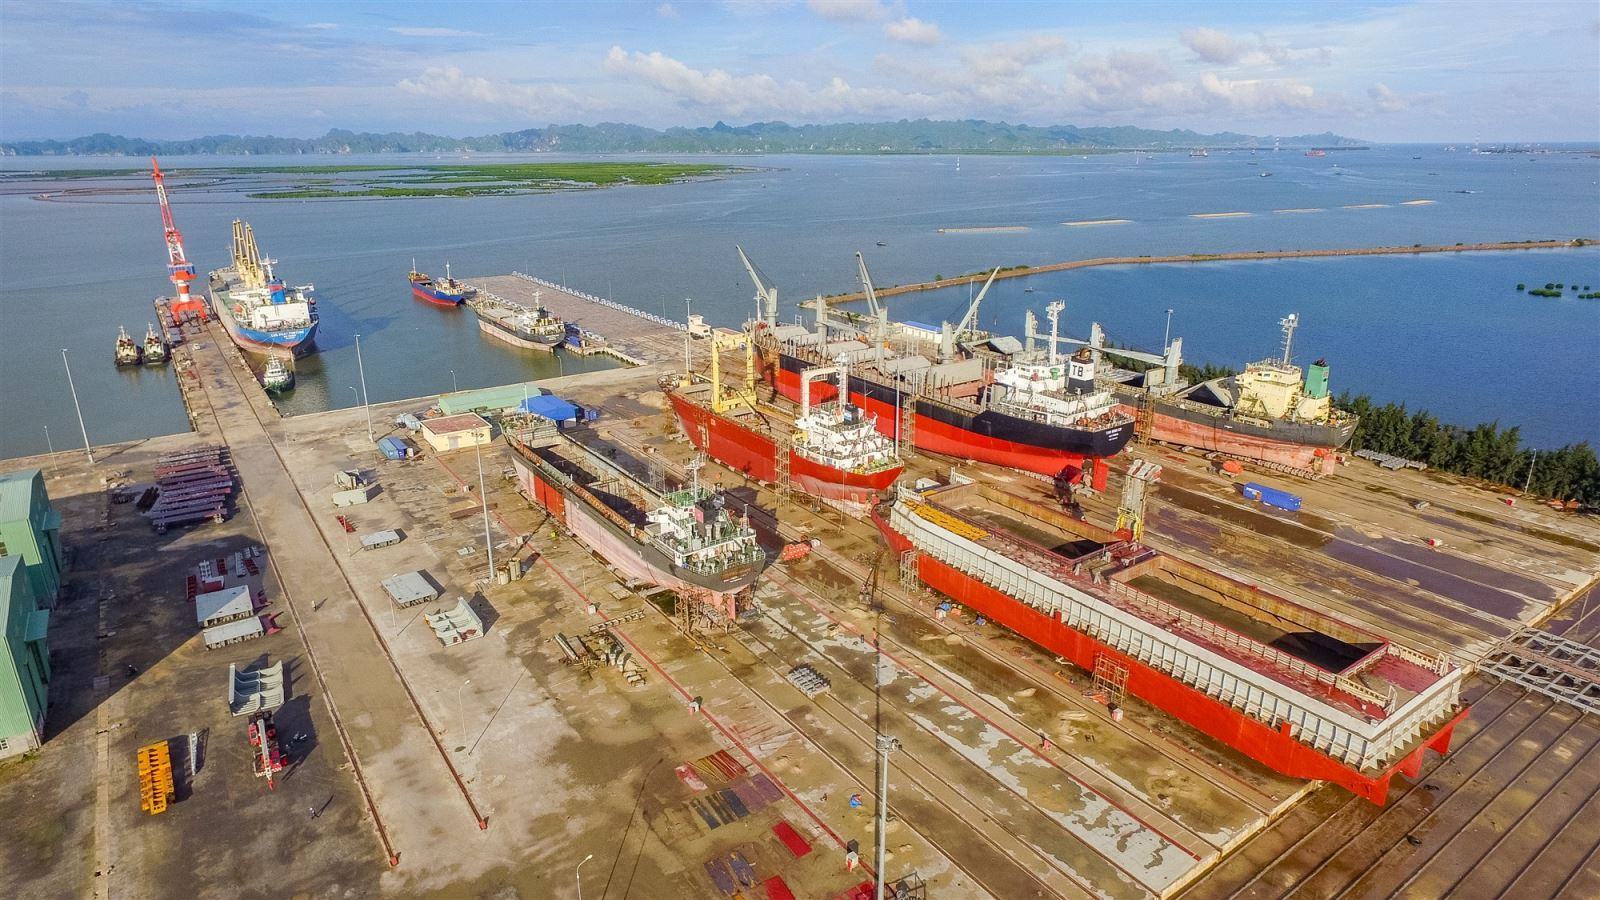 Cơ sở hạ tầng phục vụ sửa chữa tàu biển của Nosco Shipyard.